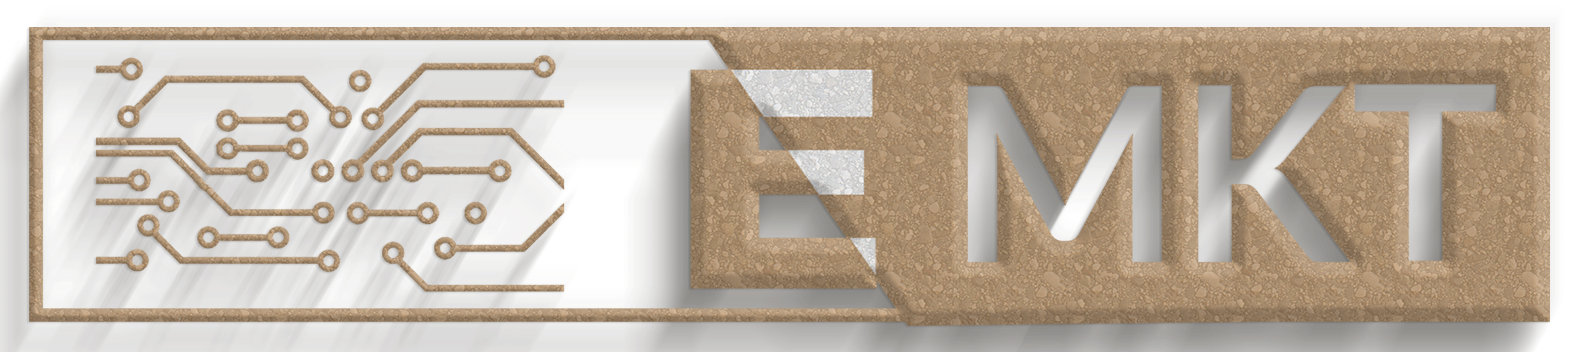 E-MKT.net logo